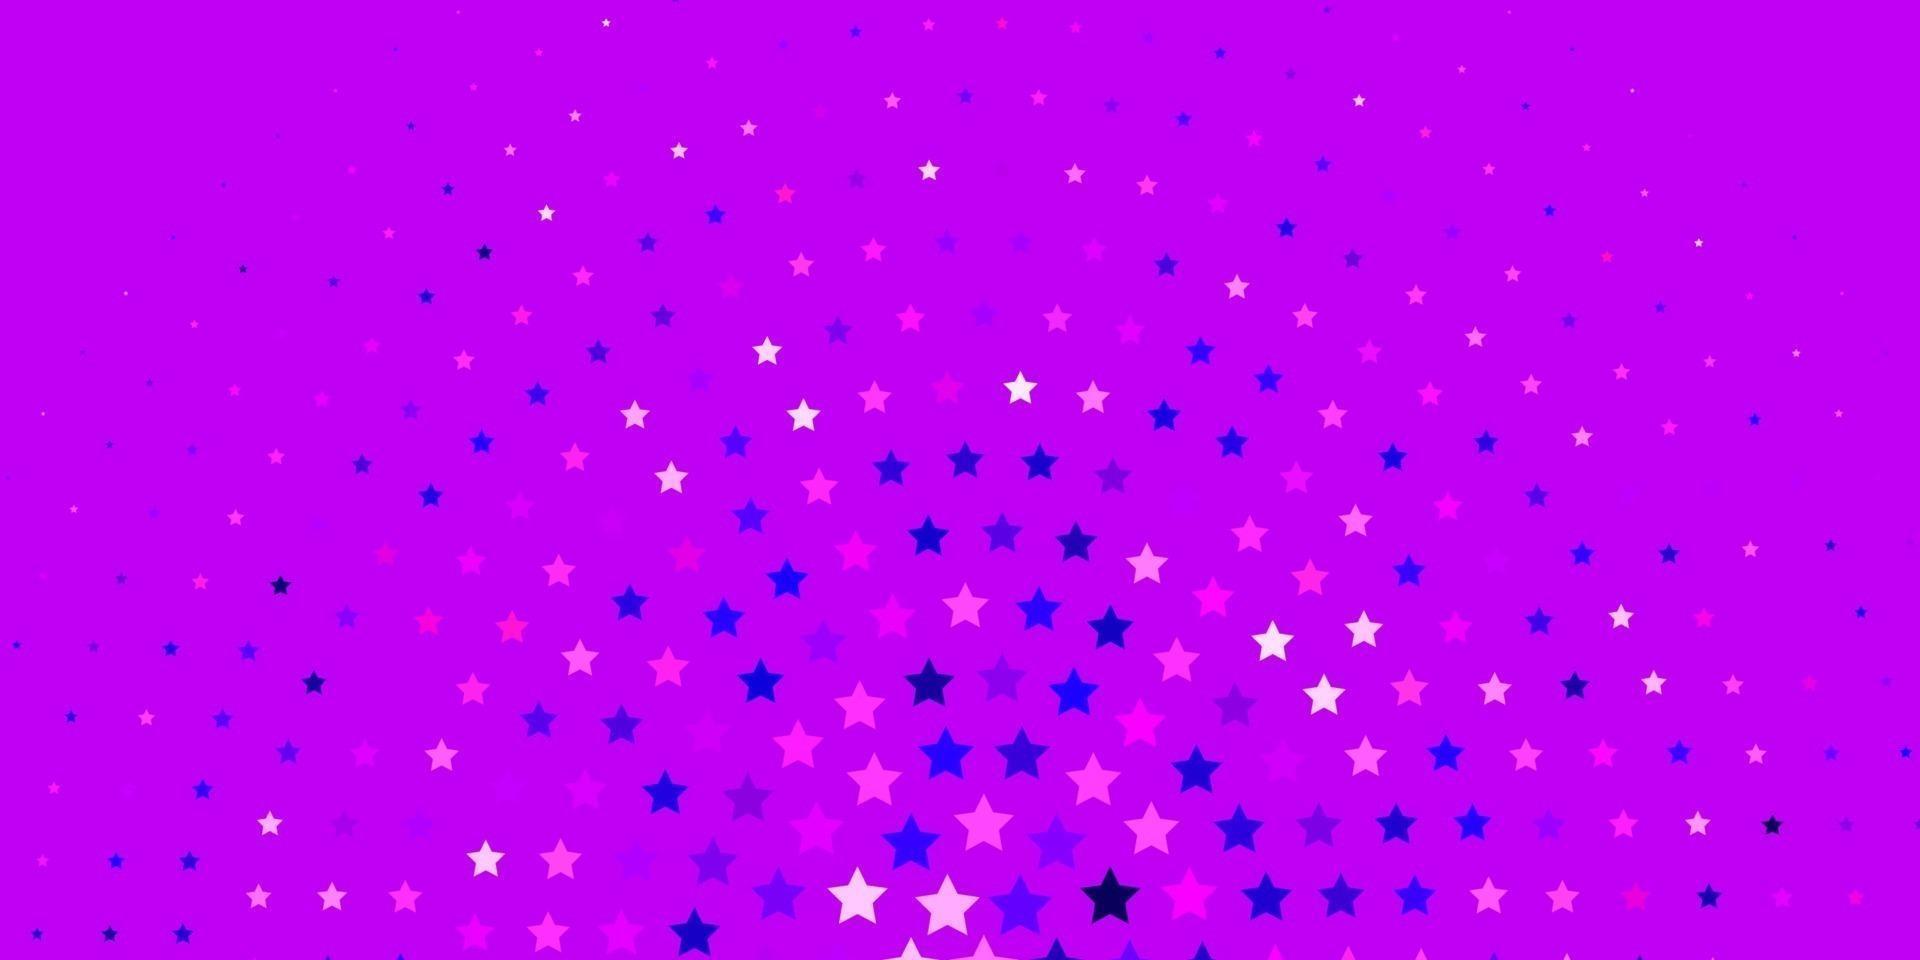 texture vettoriale viola chiaro, rosa con bellissime stelle.